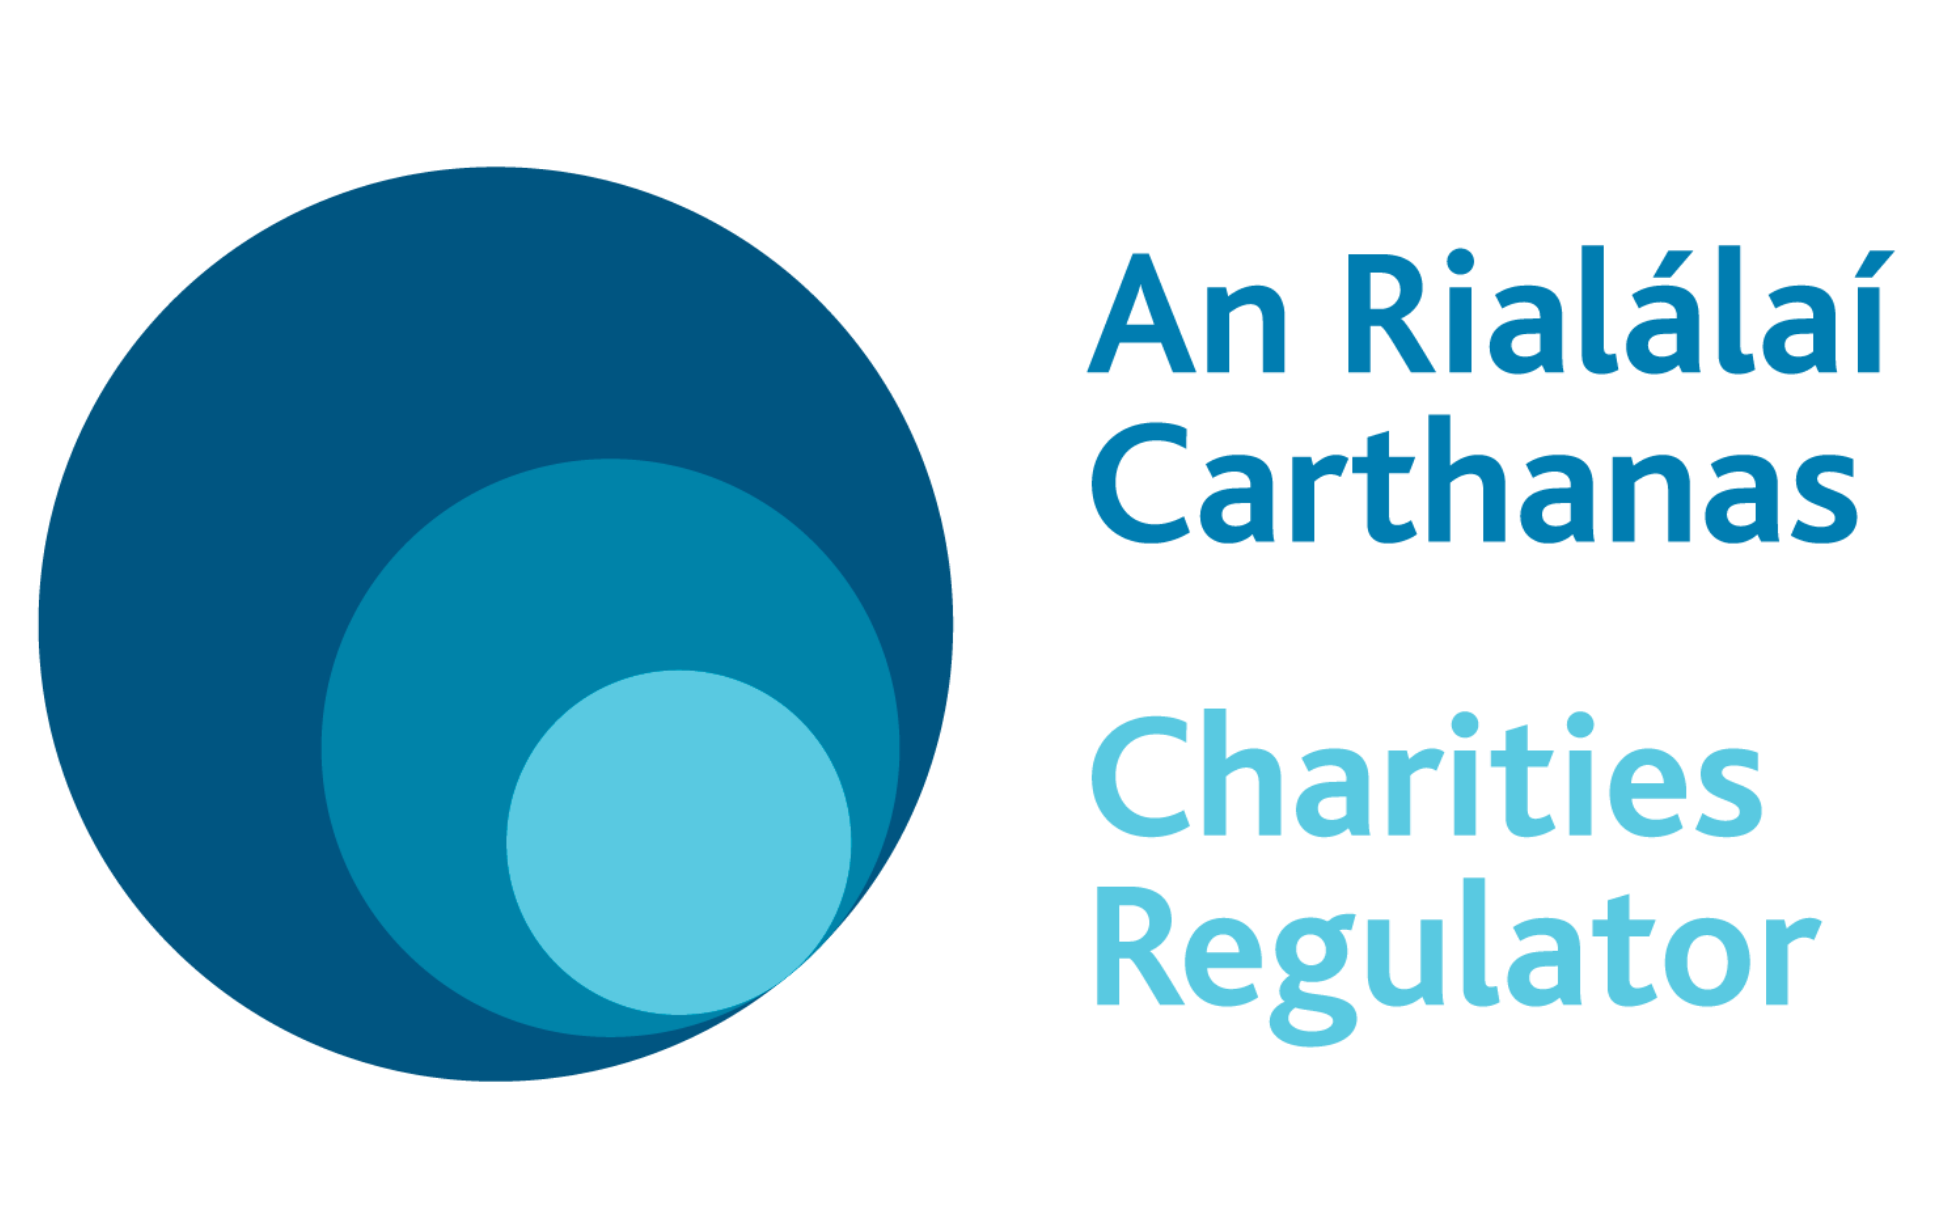 Charities Regulator